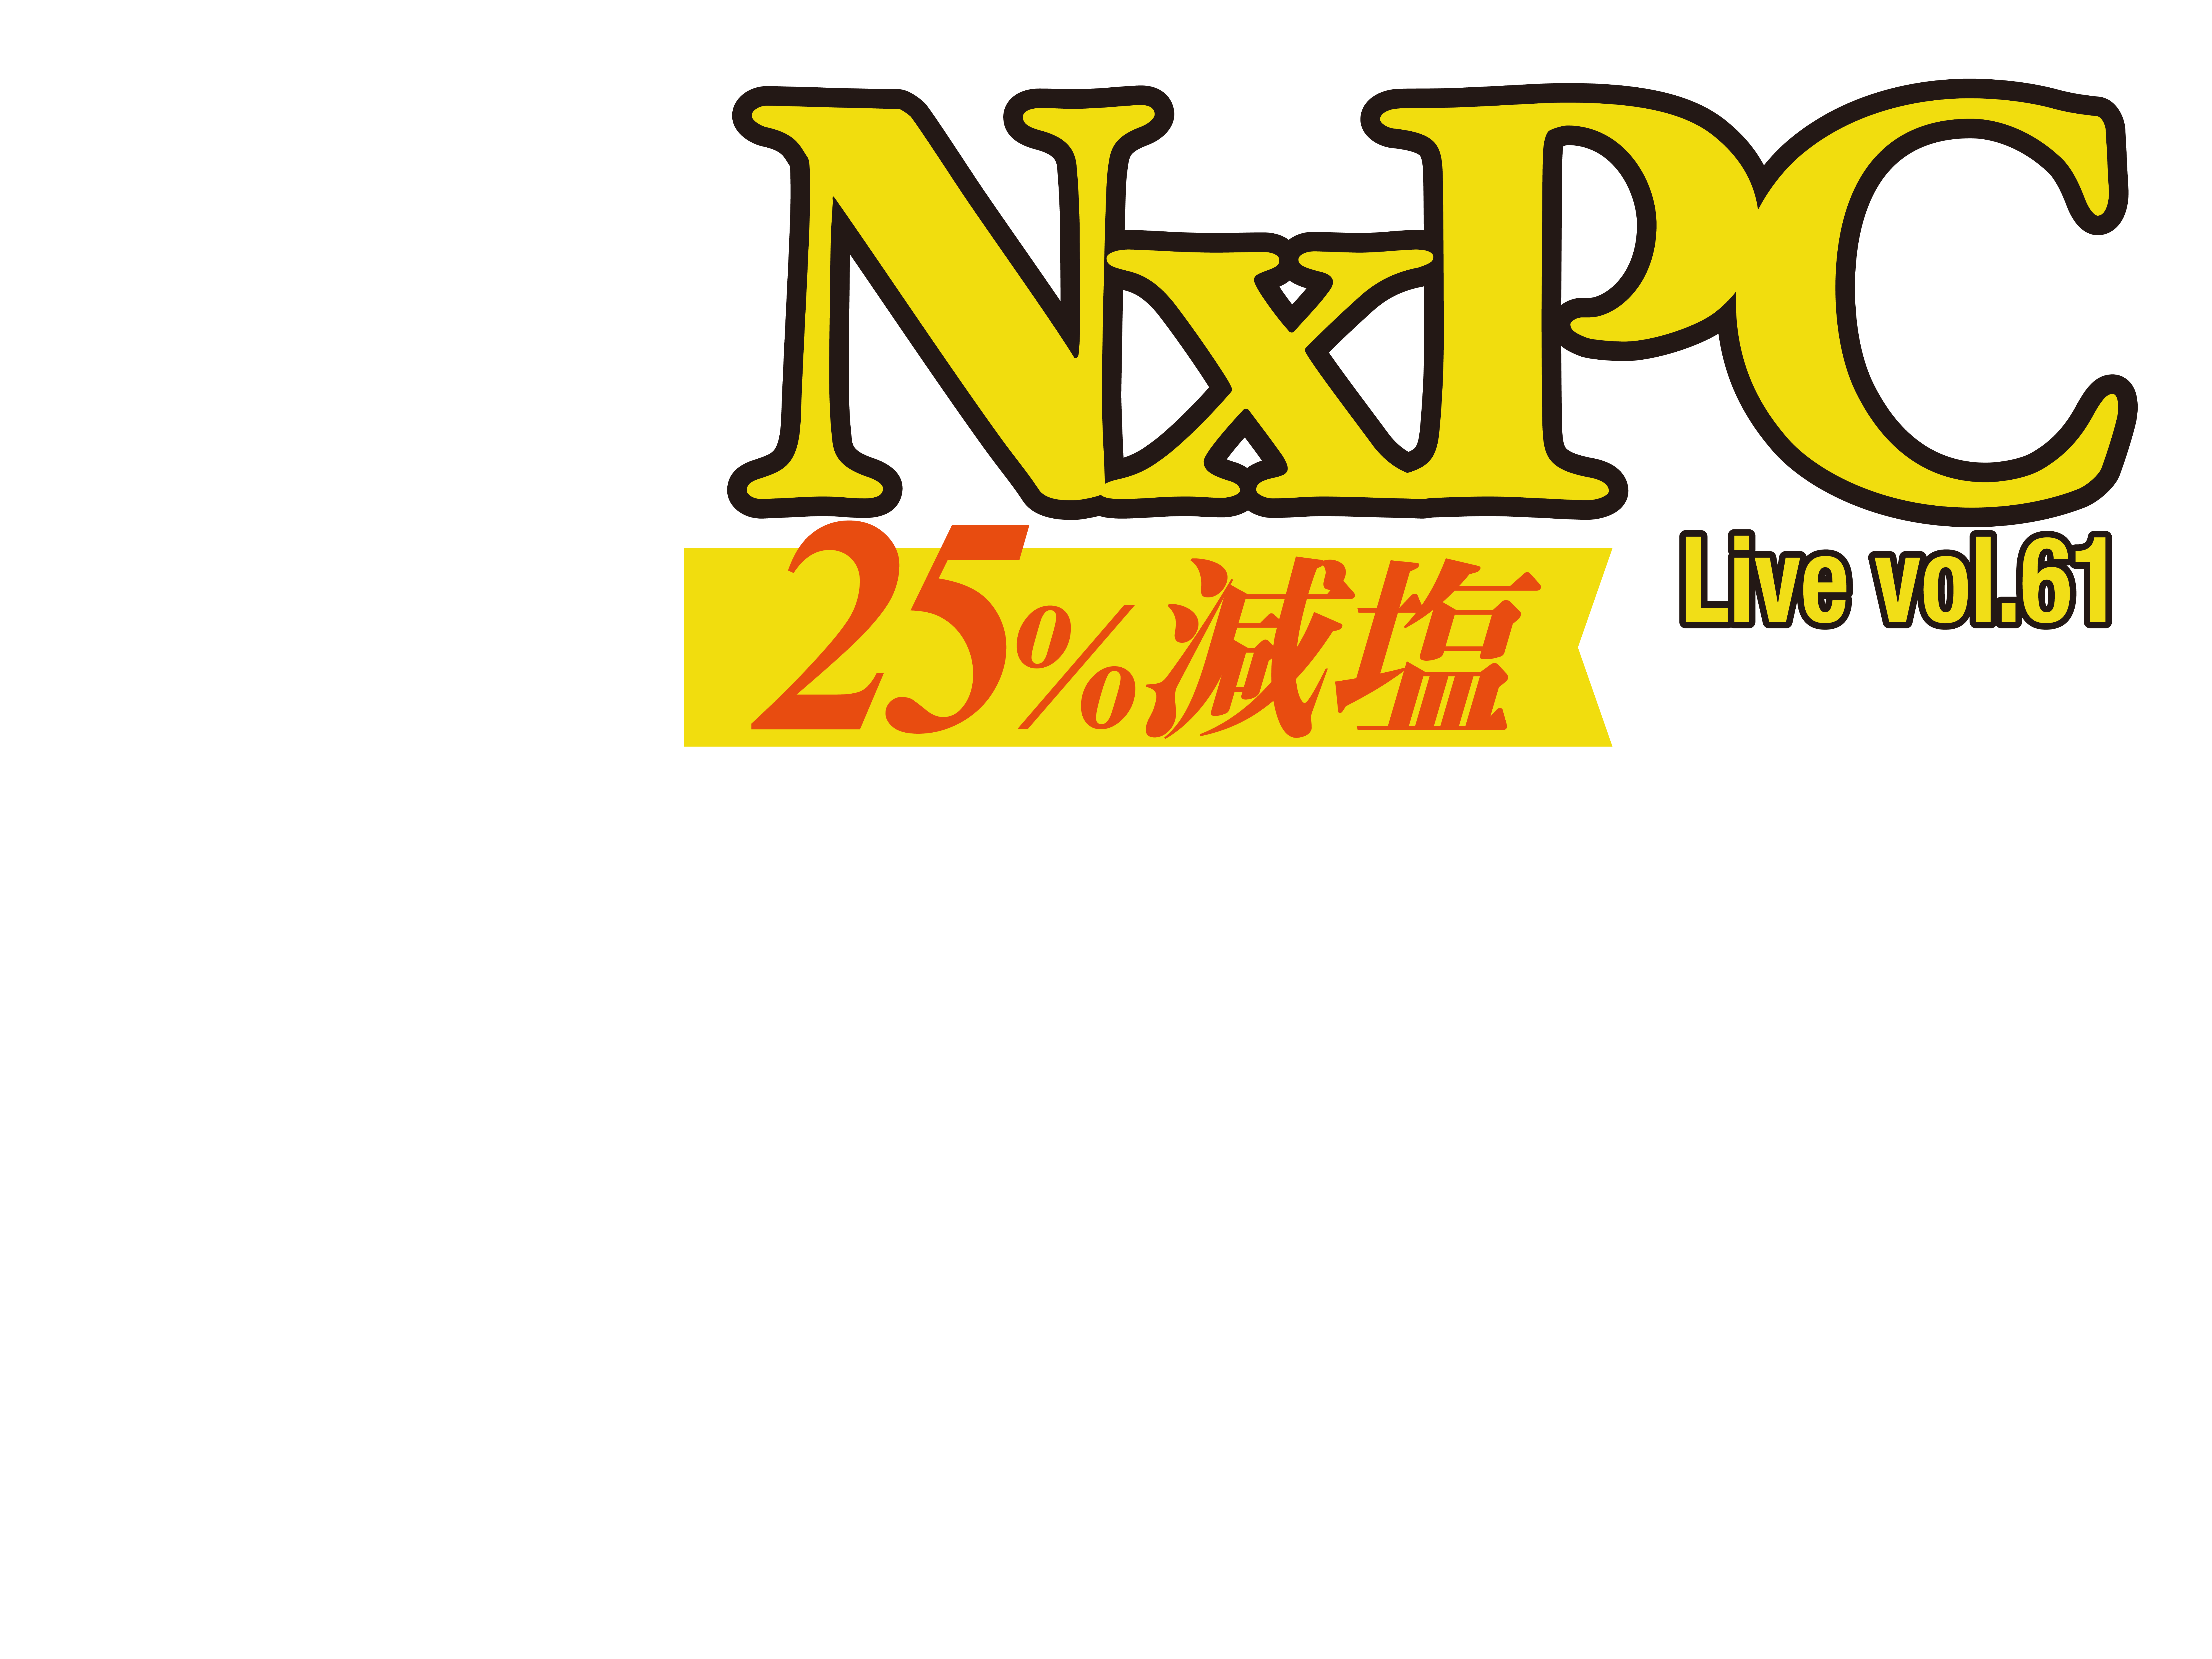 NxPC.Live vol.55